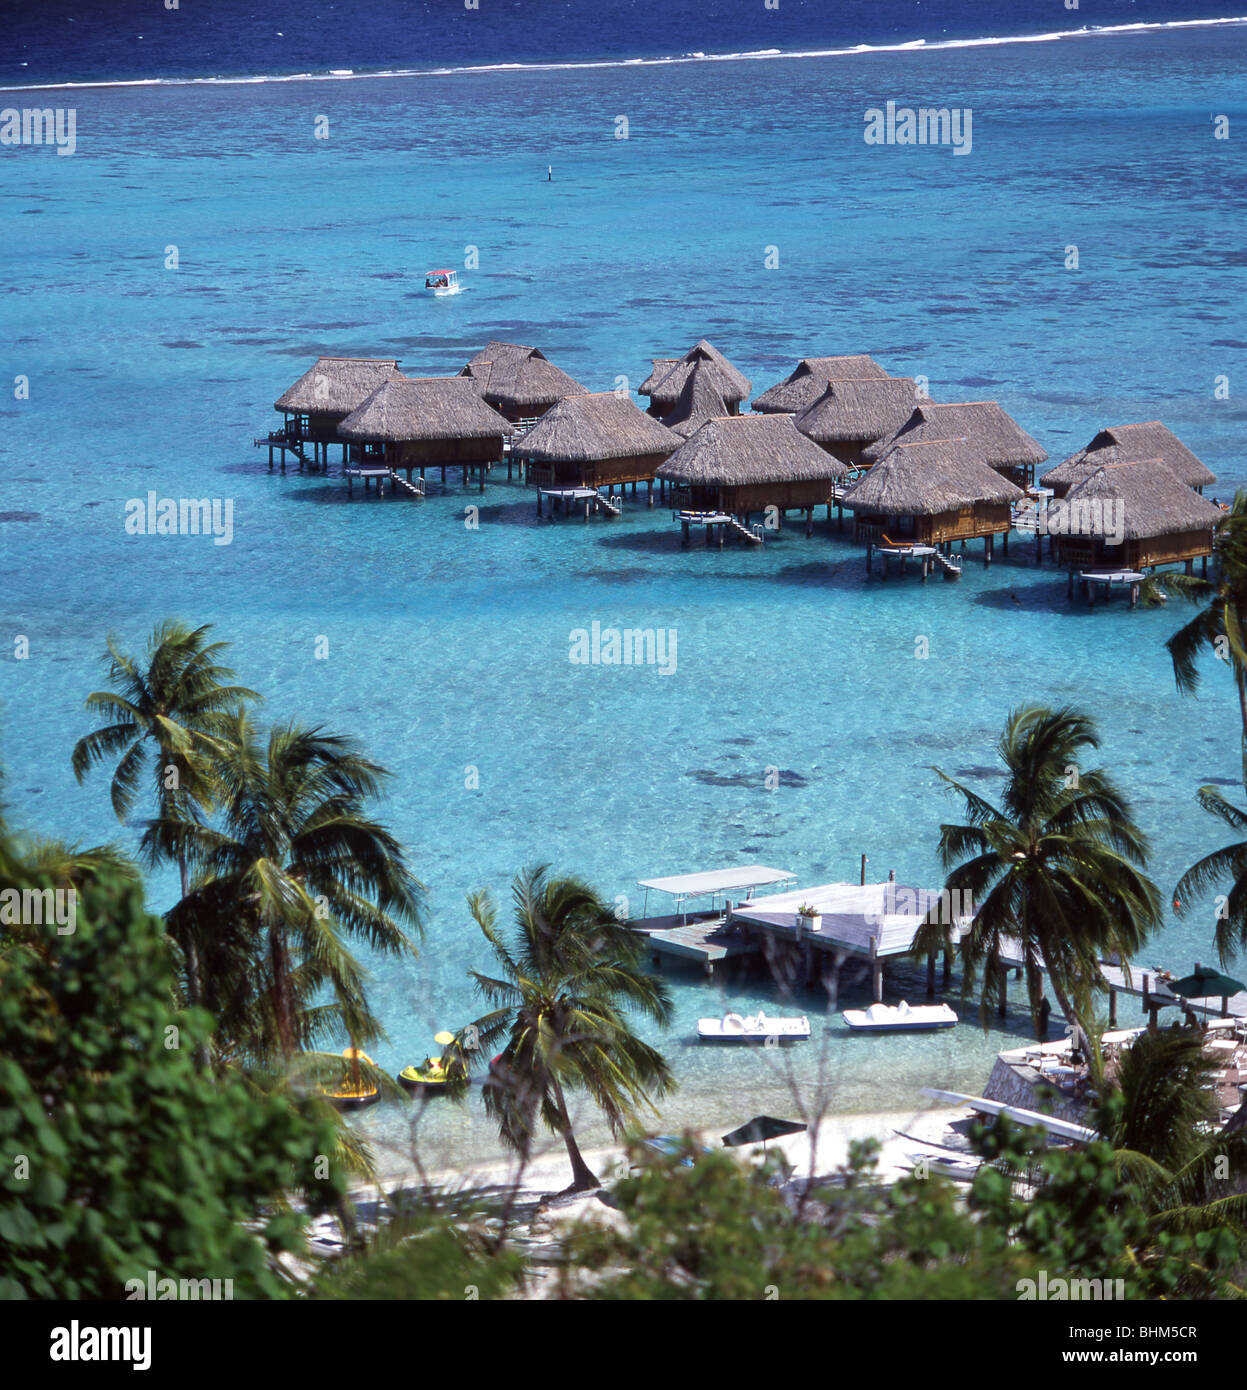 Avis de cabines sur mer, hôtel Sofitel, Moorea, Tahiti, Polynésie Française Banque D'Images